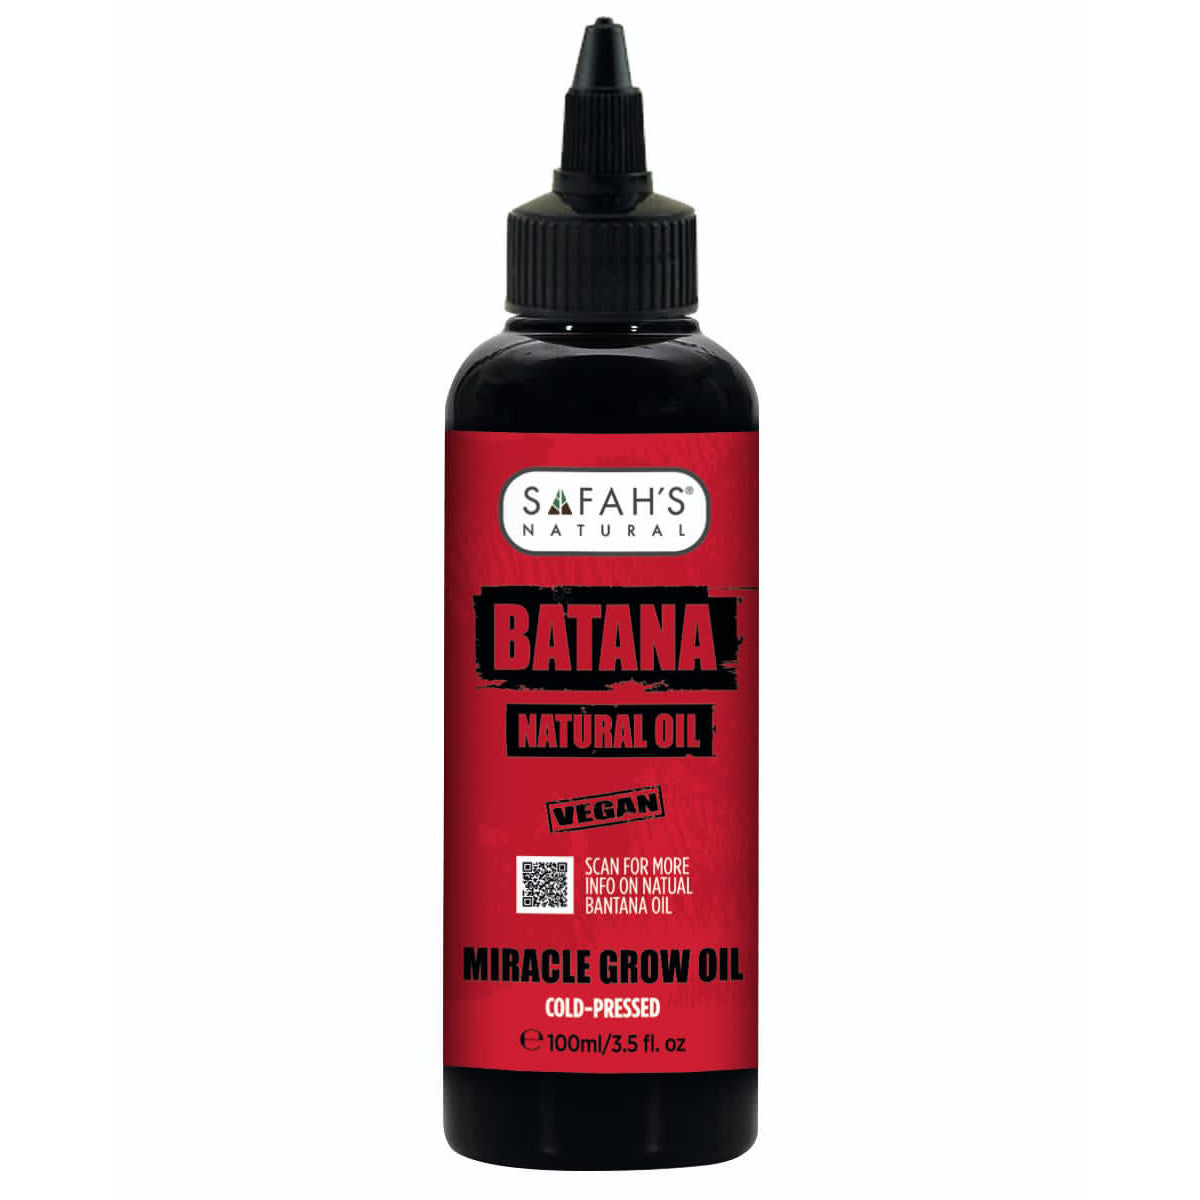 Safah's Natural Batana Natural Oil 3.5 oz